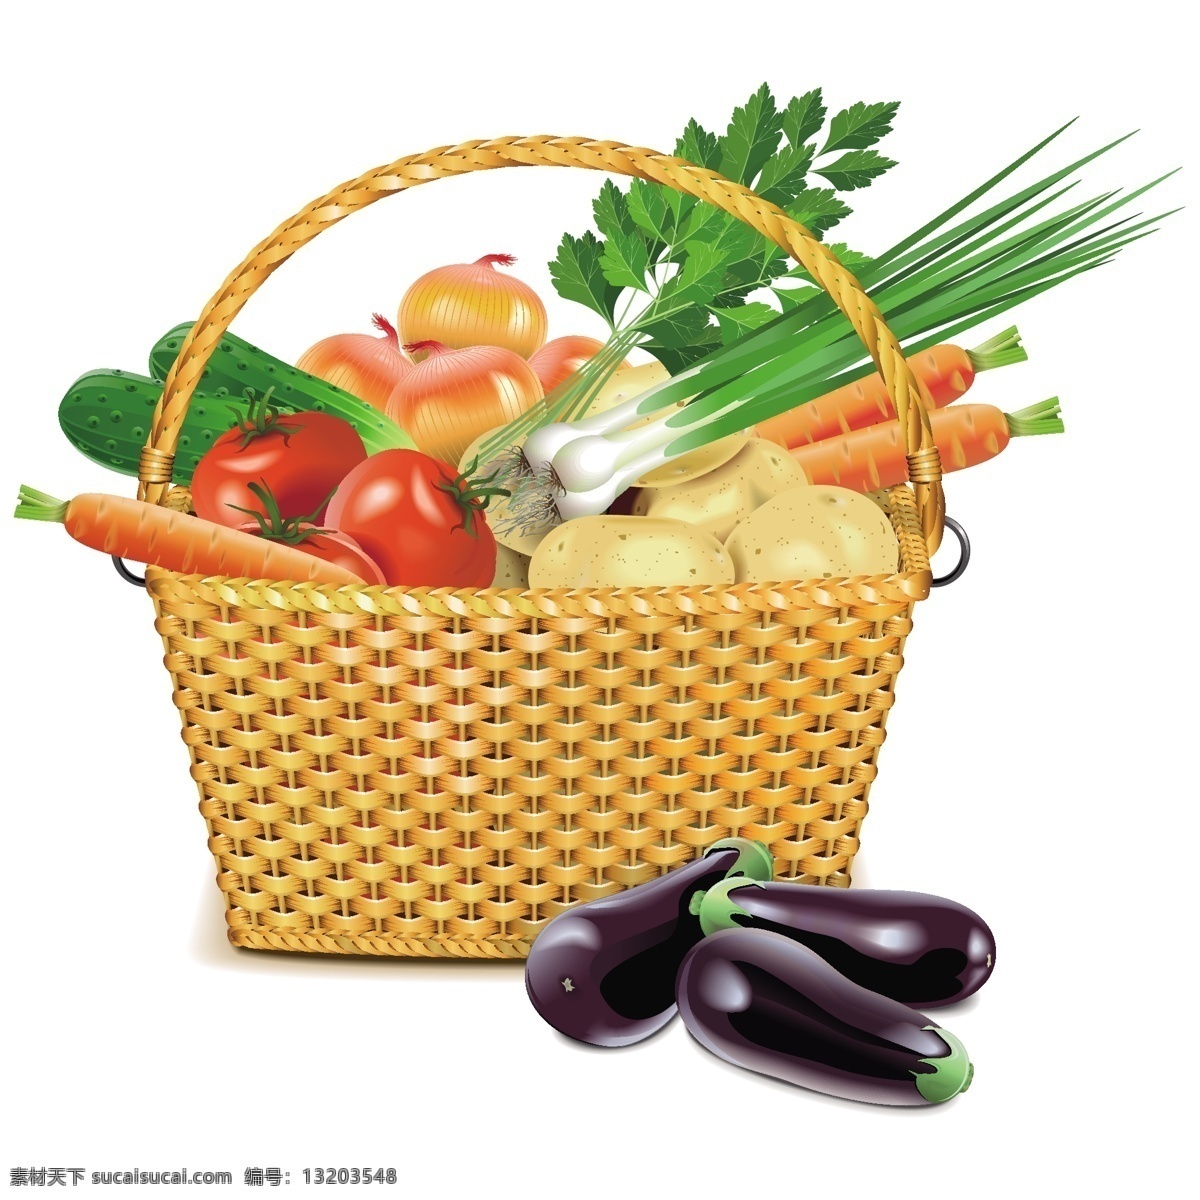 彩色 手绘 蔬菜 篮子 卡通 矢量 印花 矢量素材 设计素材 平面素材